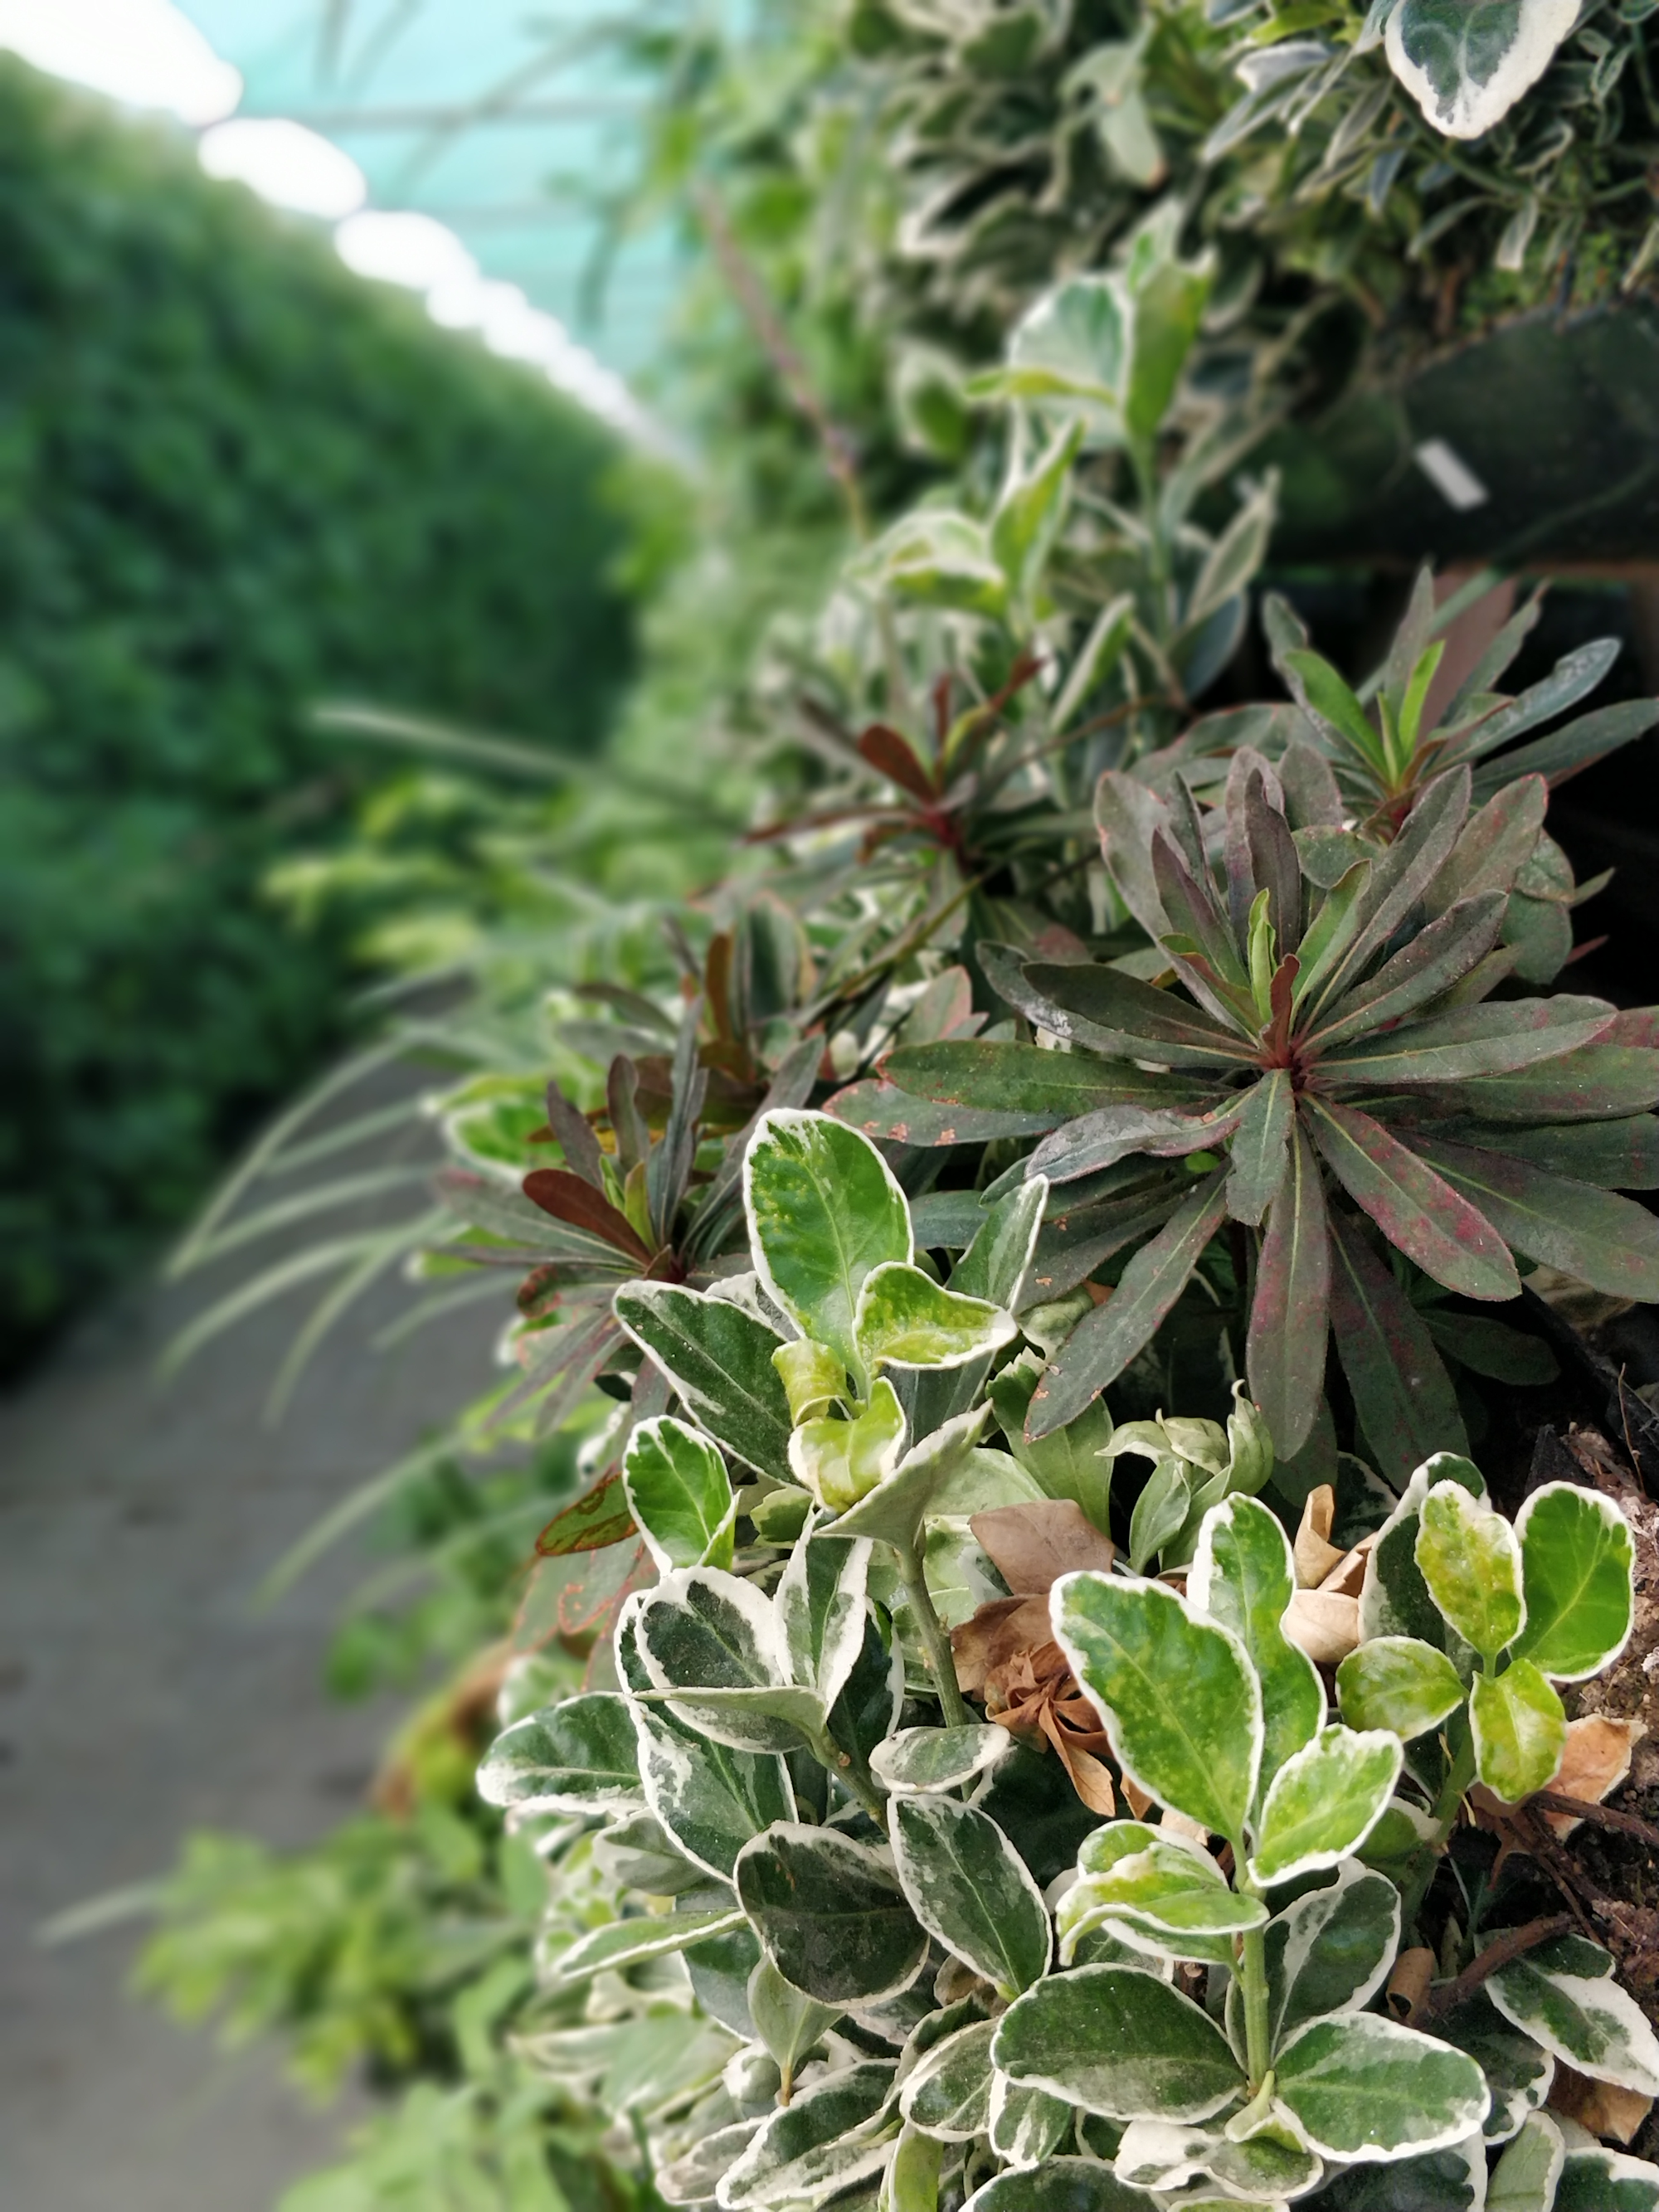 Nahaufnahme von immergrünen Pflanzen - weiße und grüne Pflanzen in einer Gärtnerei